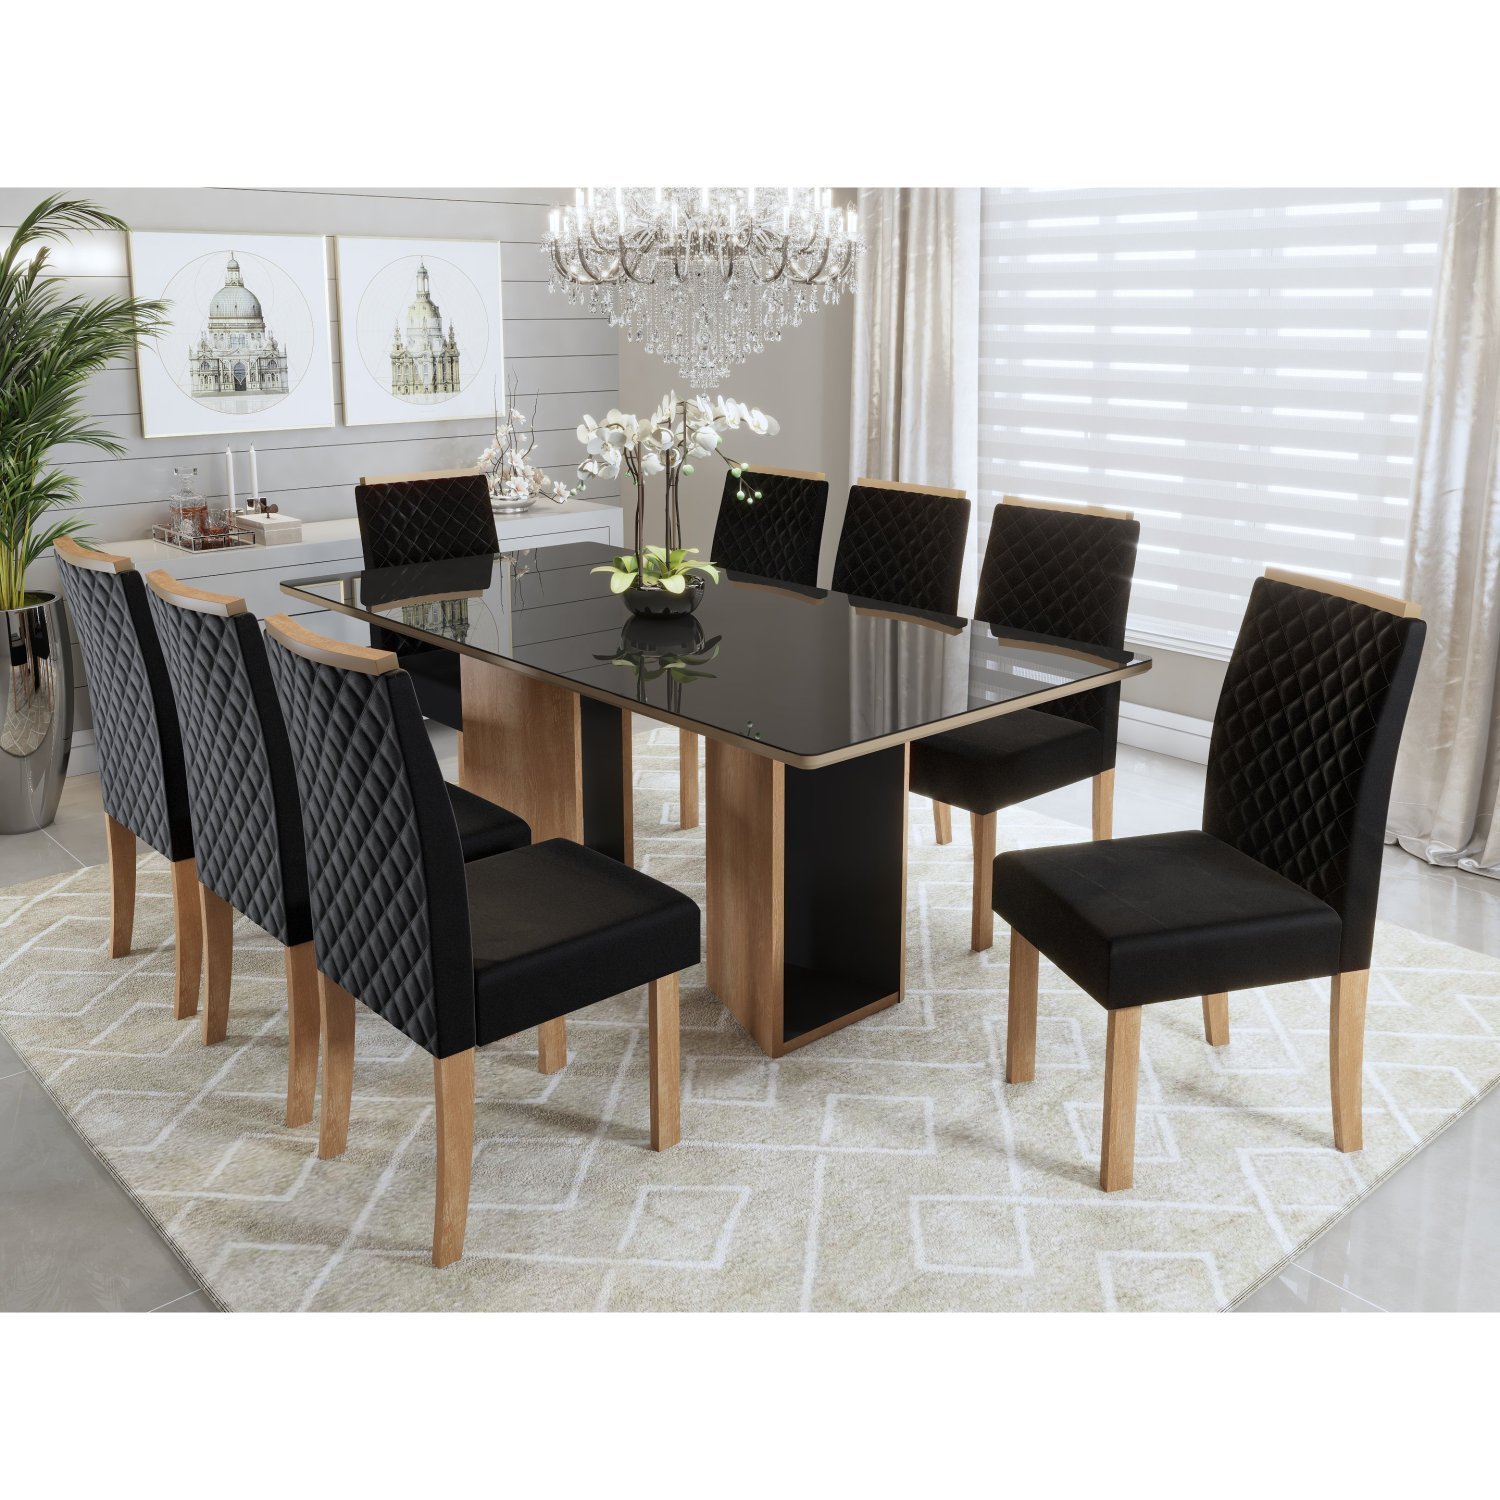 Conjunto Sala de Jantar Mesa Ayla 200cm Tampo Vidro/MDF com 8 Cadeiras Elegance Sonetto Móveis - 1